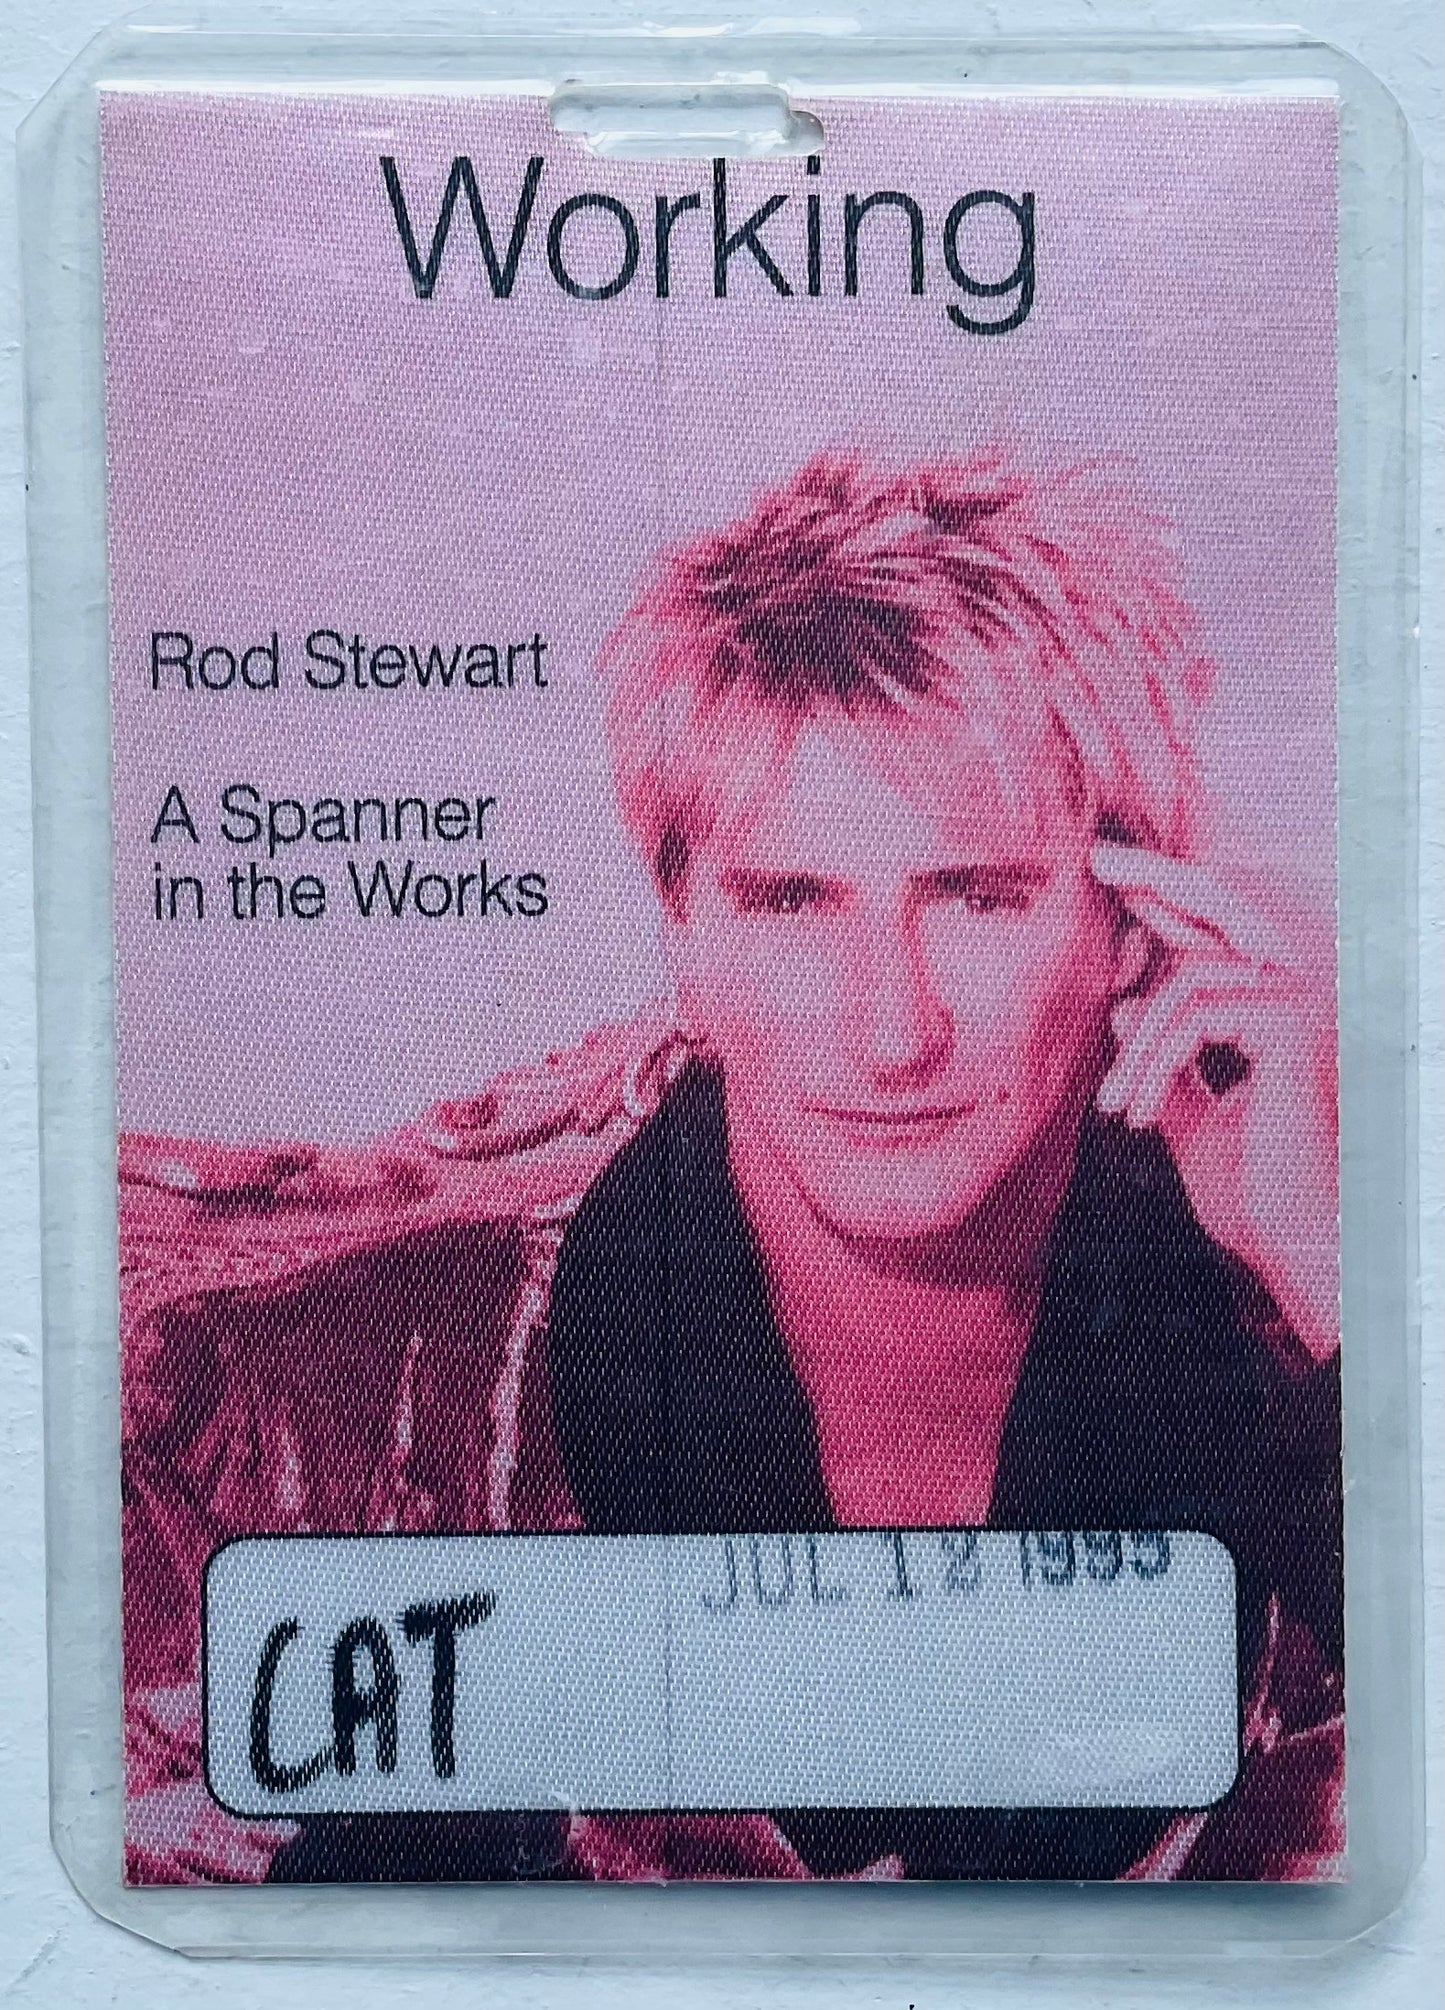 Rod Stewart Original Concert Backstage Pass Ticket Parken Stadium Copenhagen 12th Jul 1995